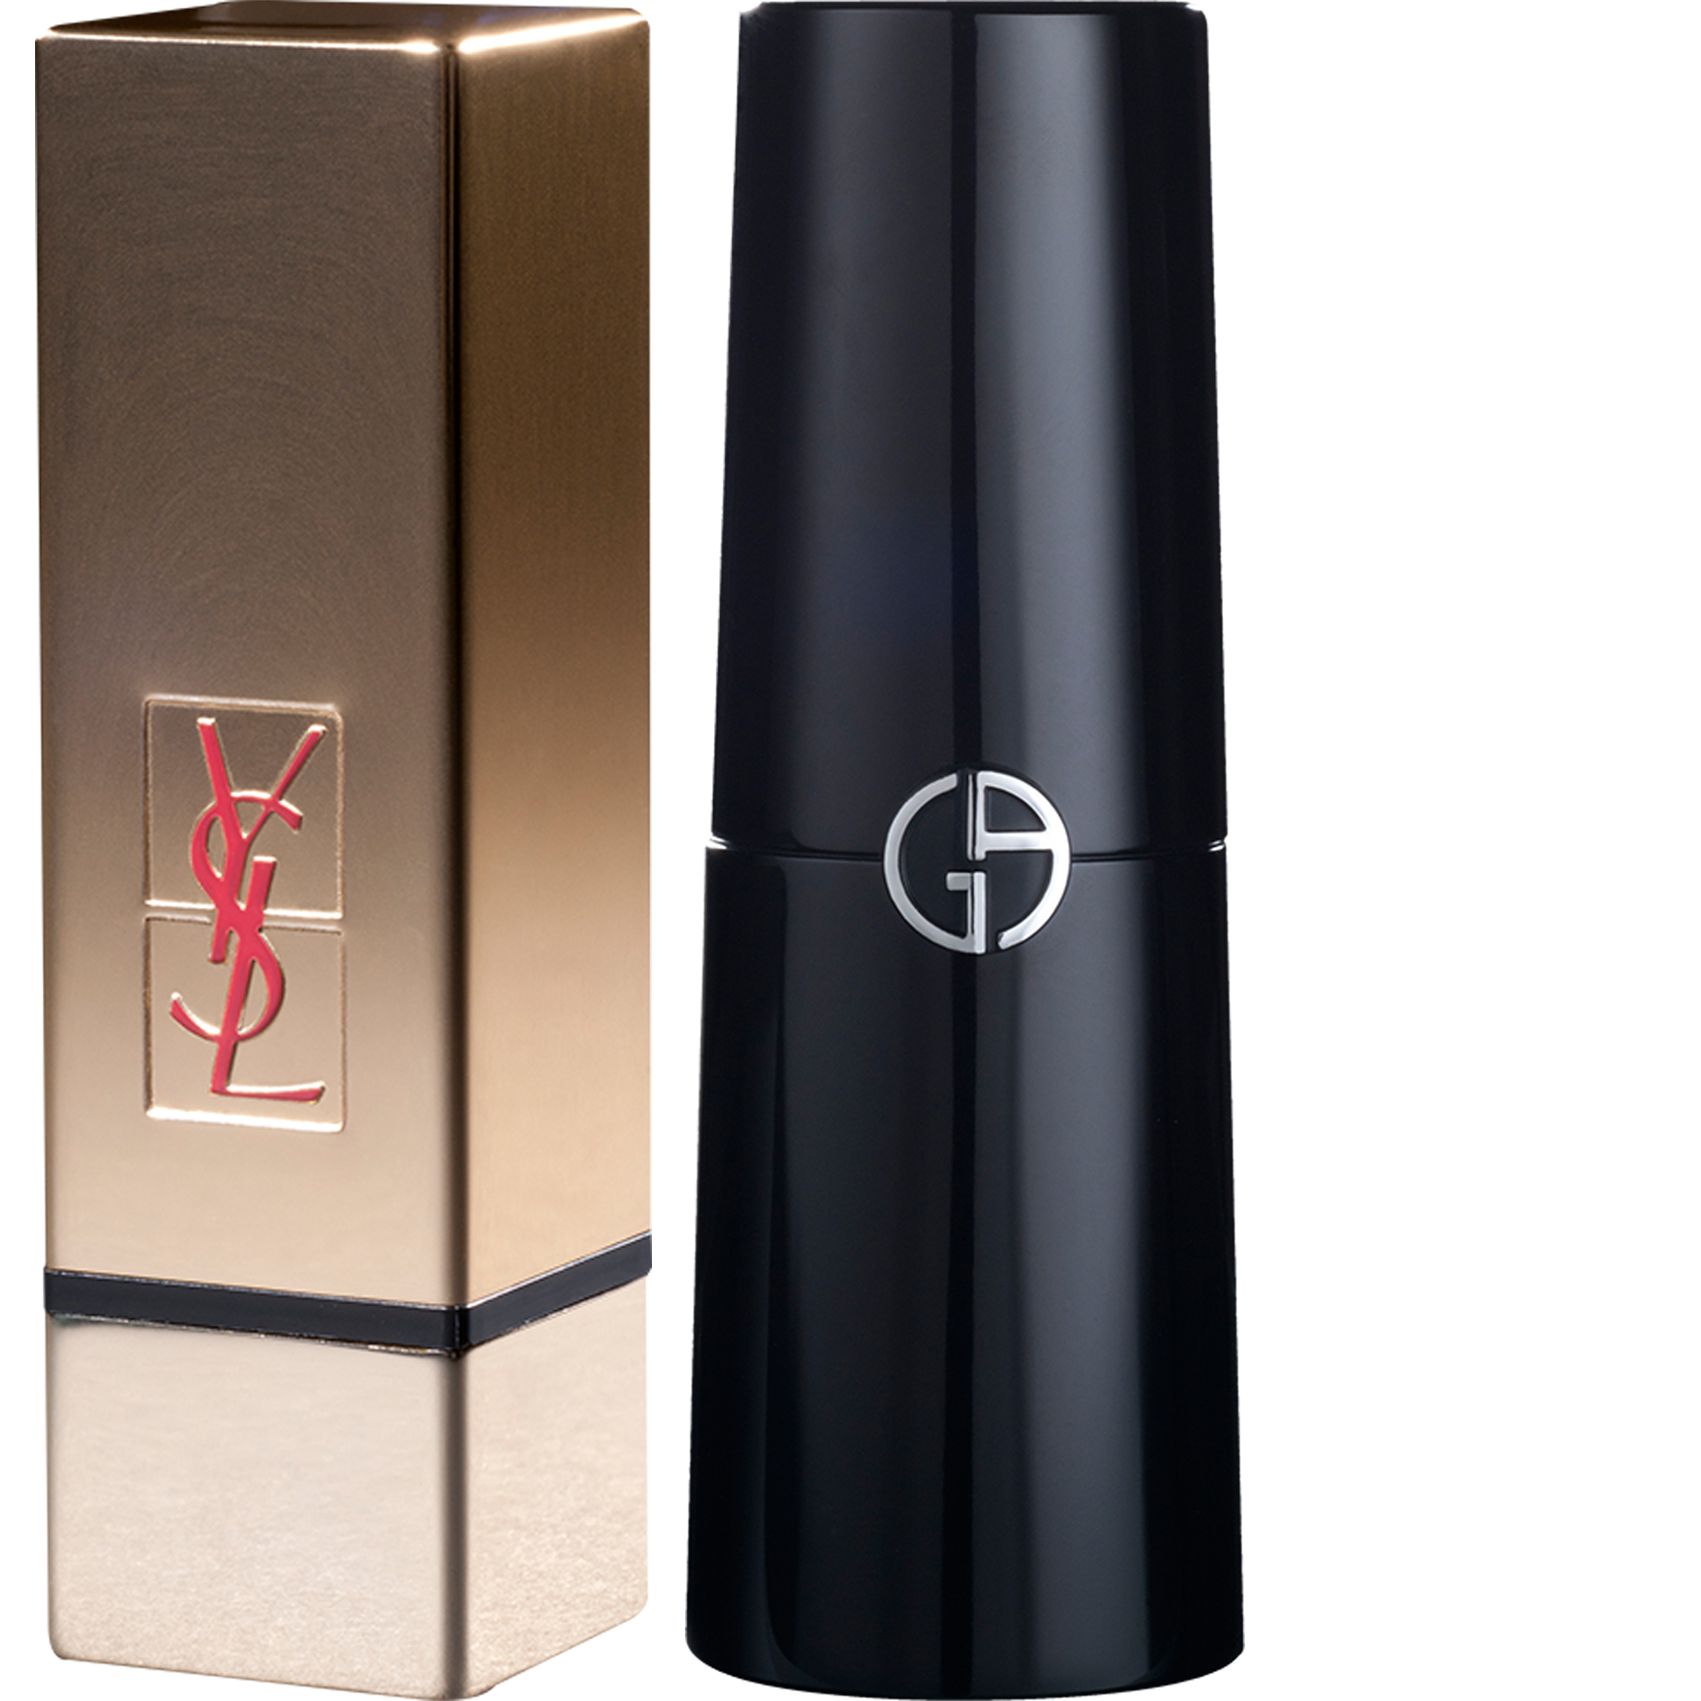 Yves Saint Laurent Pure Couture ist ein goldener Lippenstift, der auf dem YSL-Design basiert und von Axilone entwickelt wurde. Das perfekt abgewinkelte kubische Design besteht aus Aluminium und der Deckel ist tief geätzt. Die Dekoration ist gold eloxiert. Das Logo ist teilweise graviert und mit rotem Siebdruck überzogen. Für die neue Version von Armanis skulpturalem und magnetischem Lippenstift